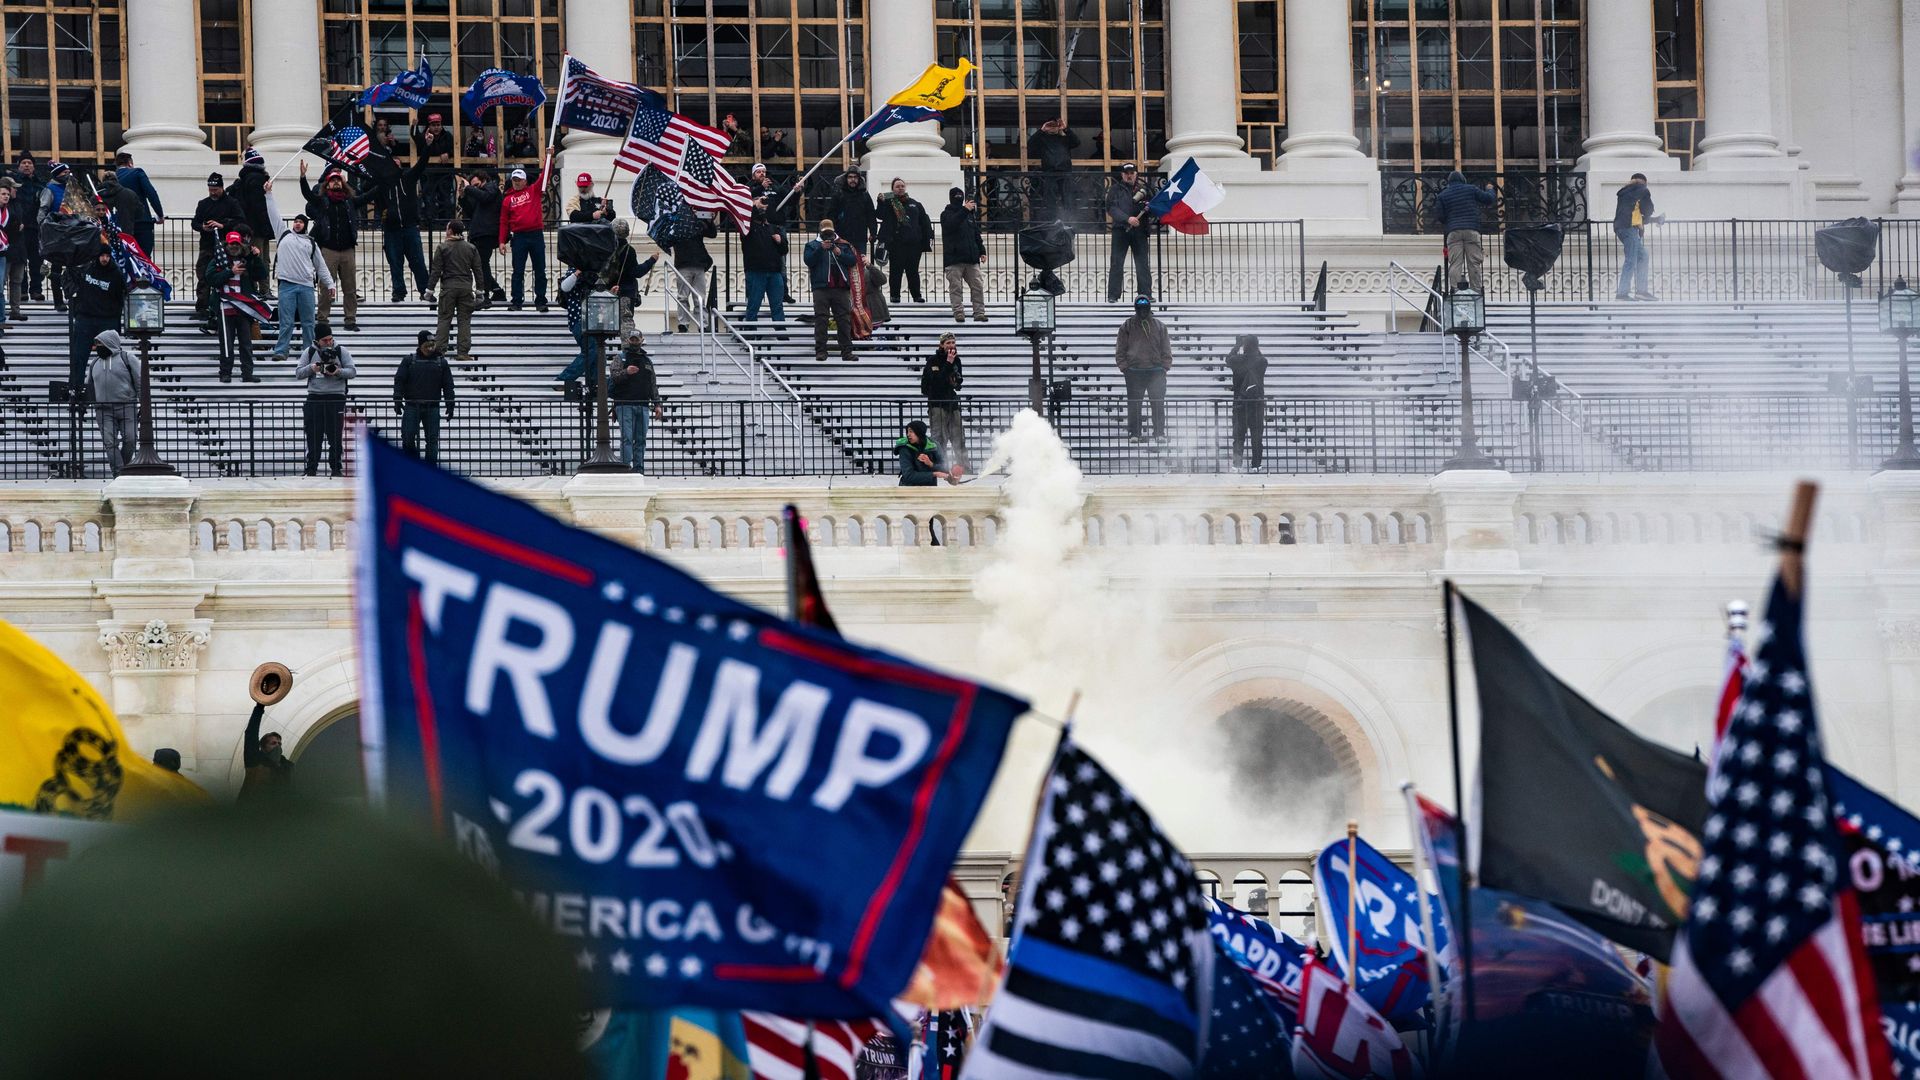 A Trump flag at the Capitol 